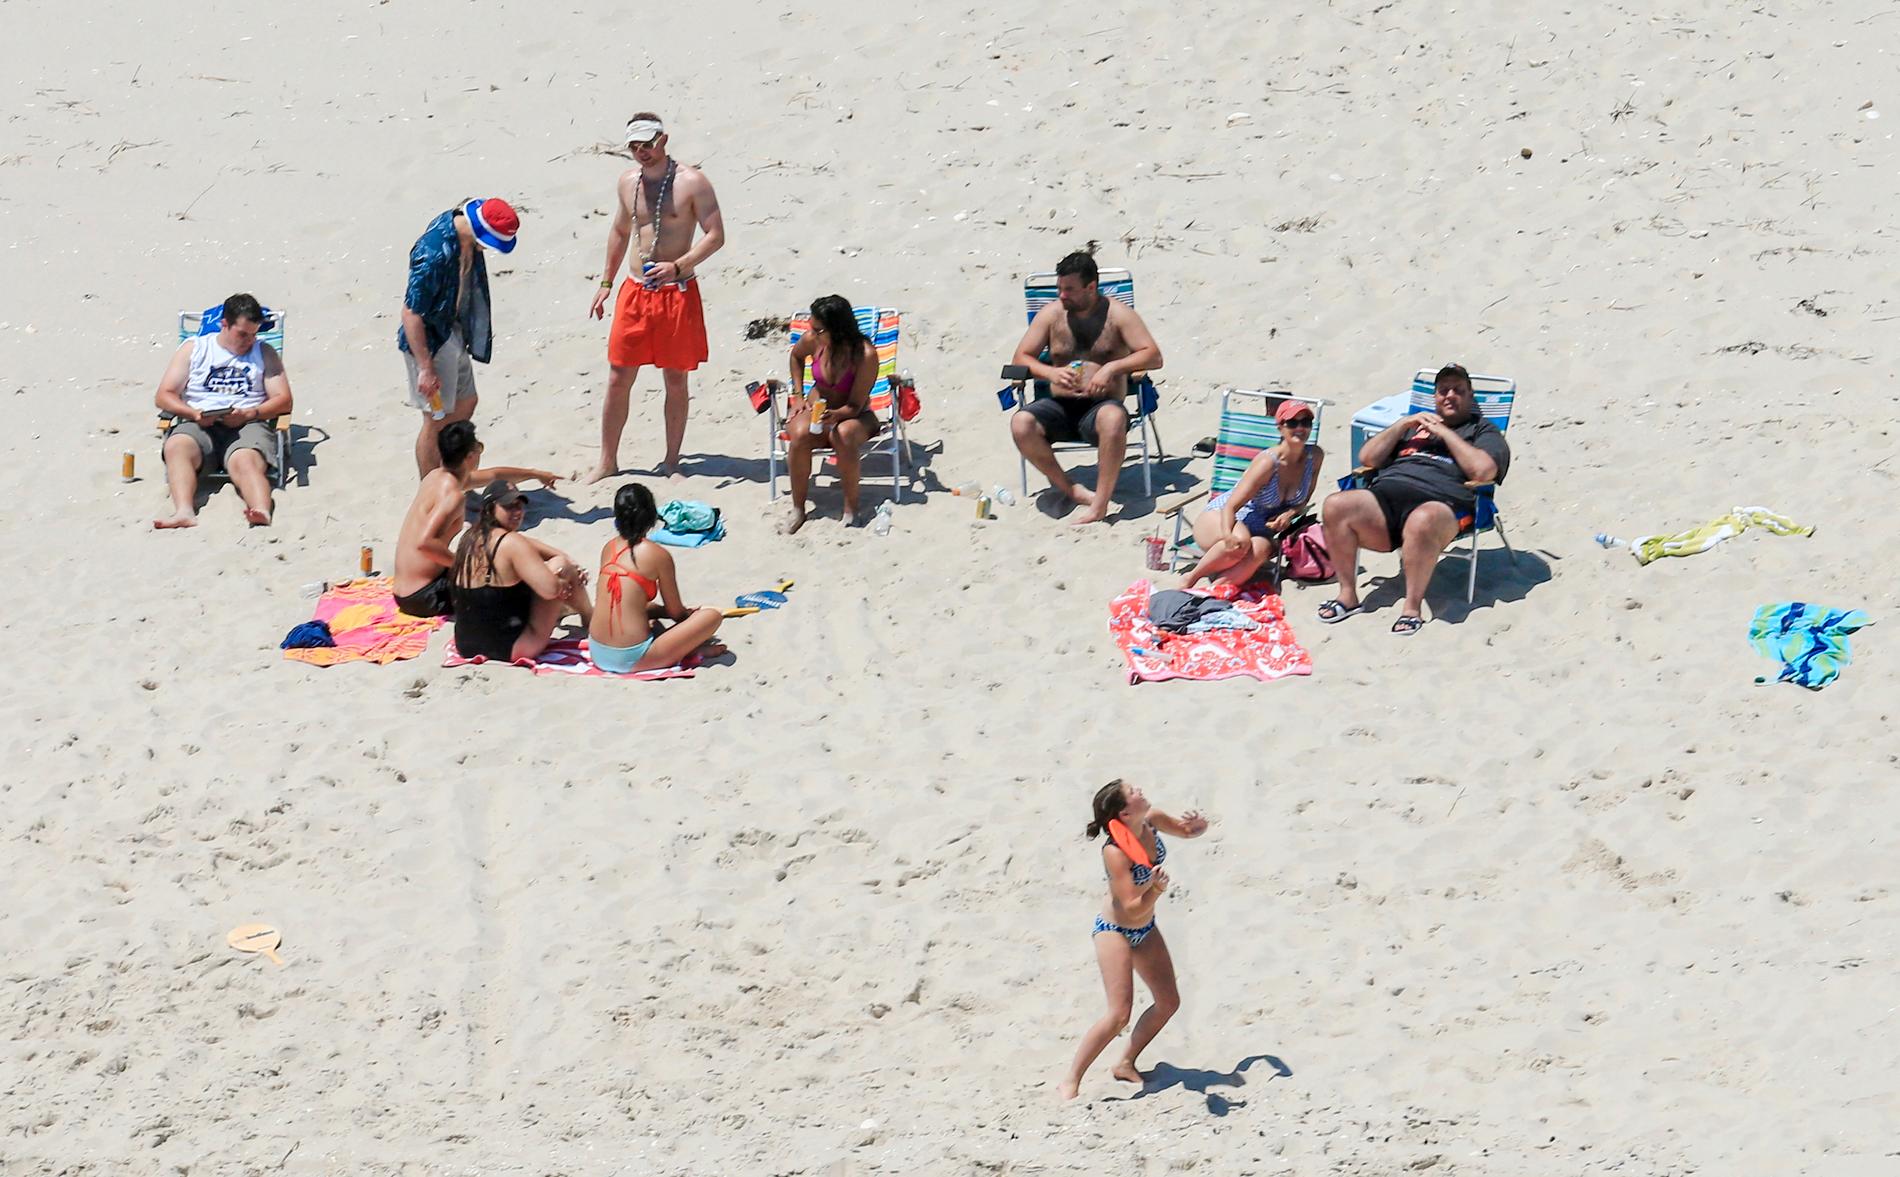 Chris Christie (längst till höger), hans familj och vännerna njuter av en solig dag på stranden...